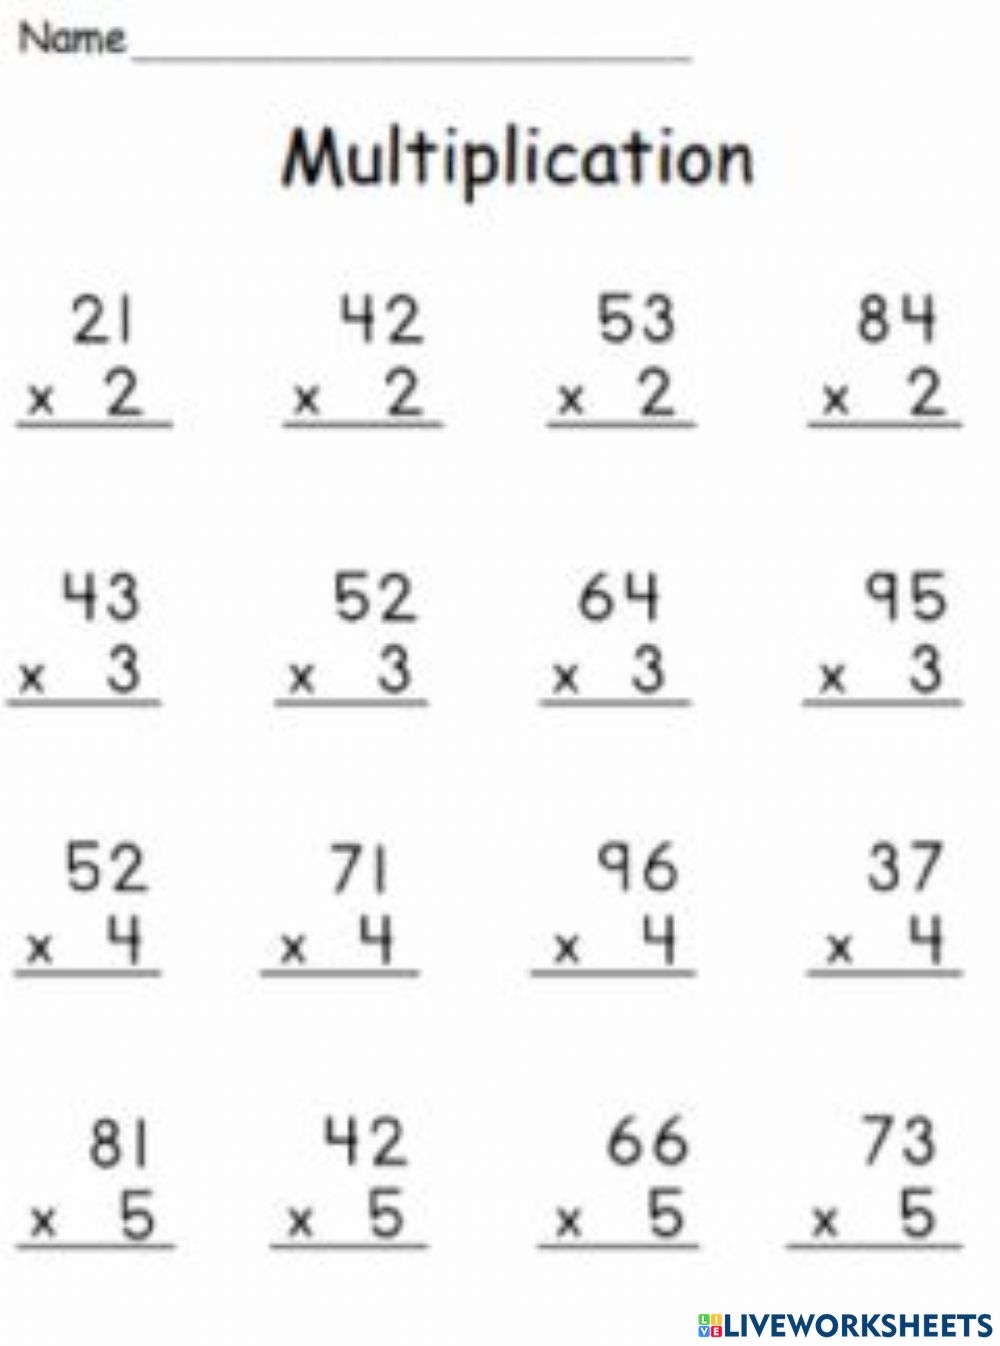 Multiplication Live Worksheets Grade 4 Printable Worksheets